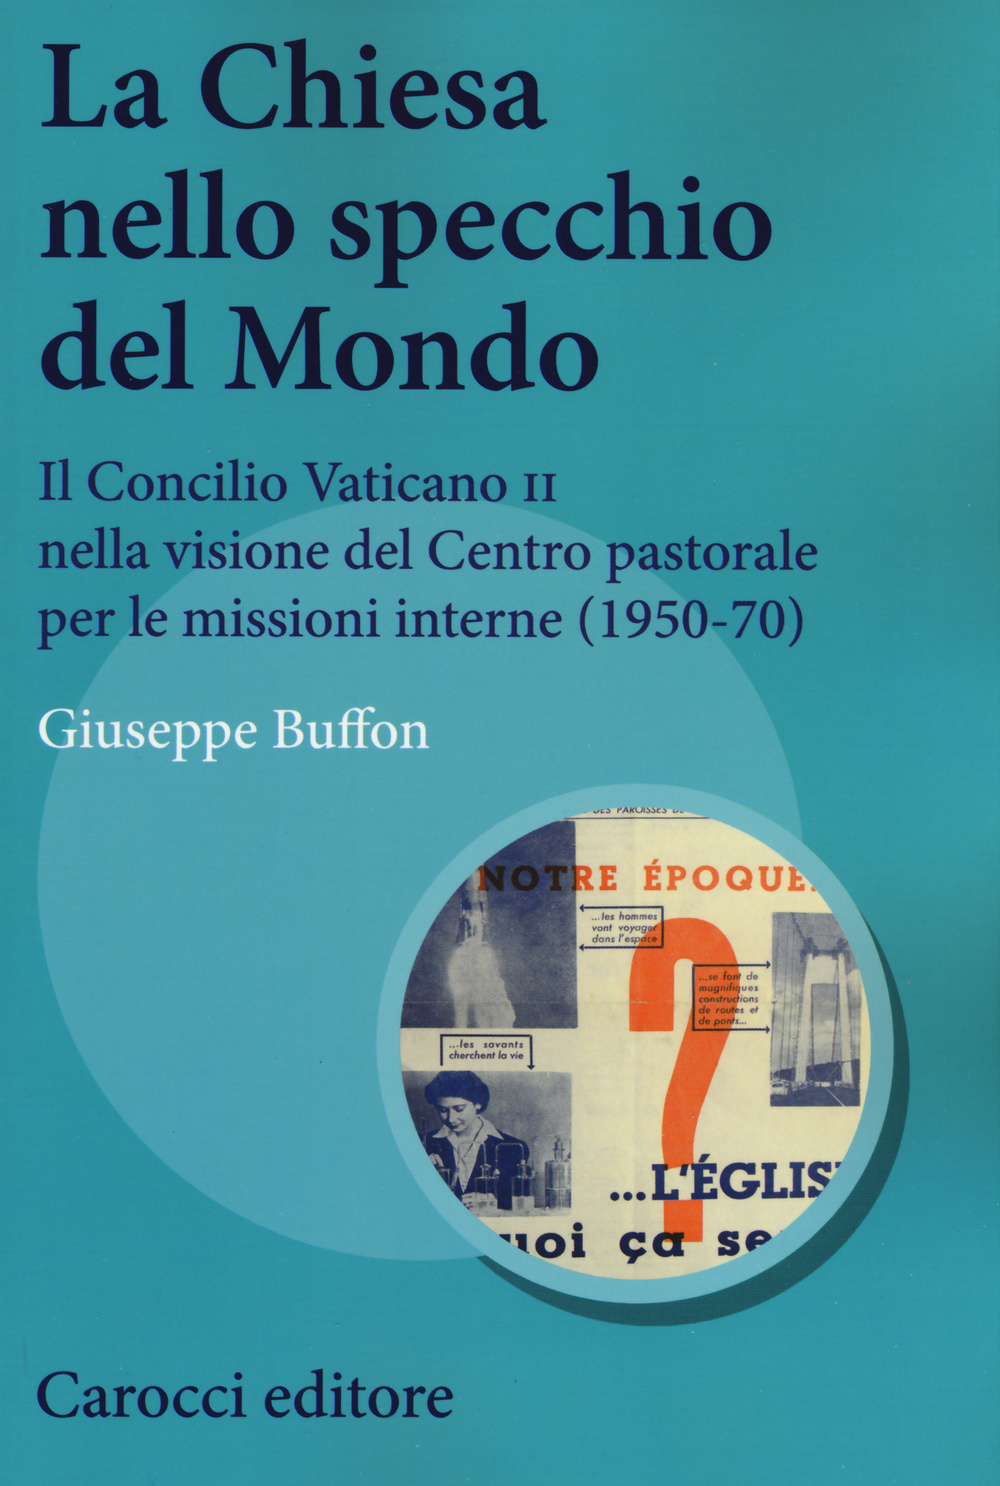 La Chiesa nello specchio del mondo. Il Concilio Vaticano II nella visione del centro pastorale per le missioni interne (1950-70)